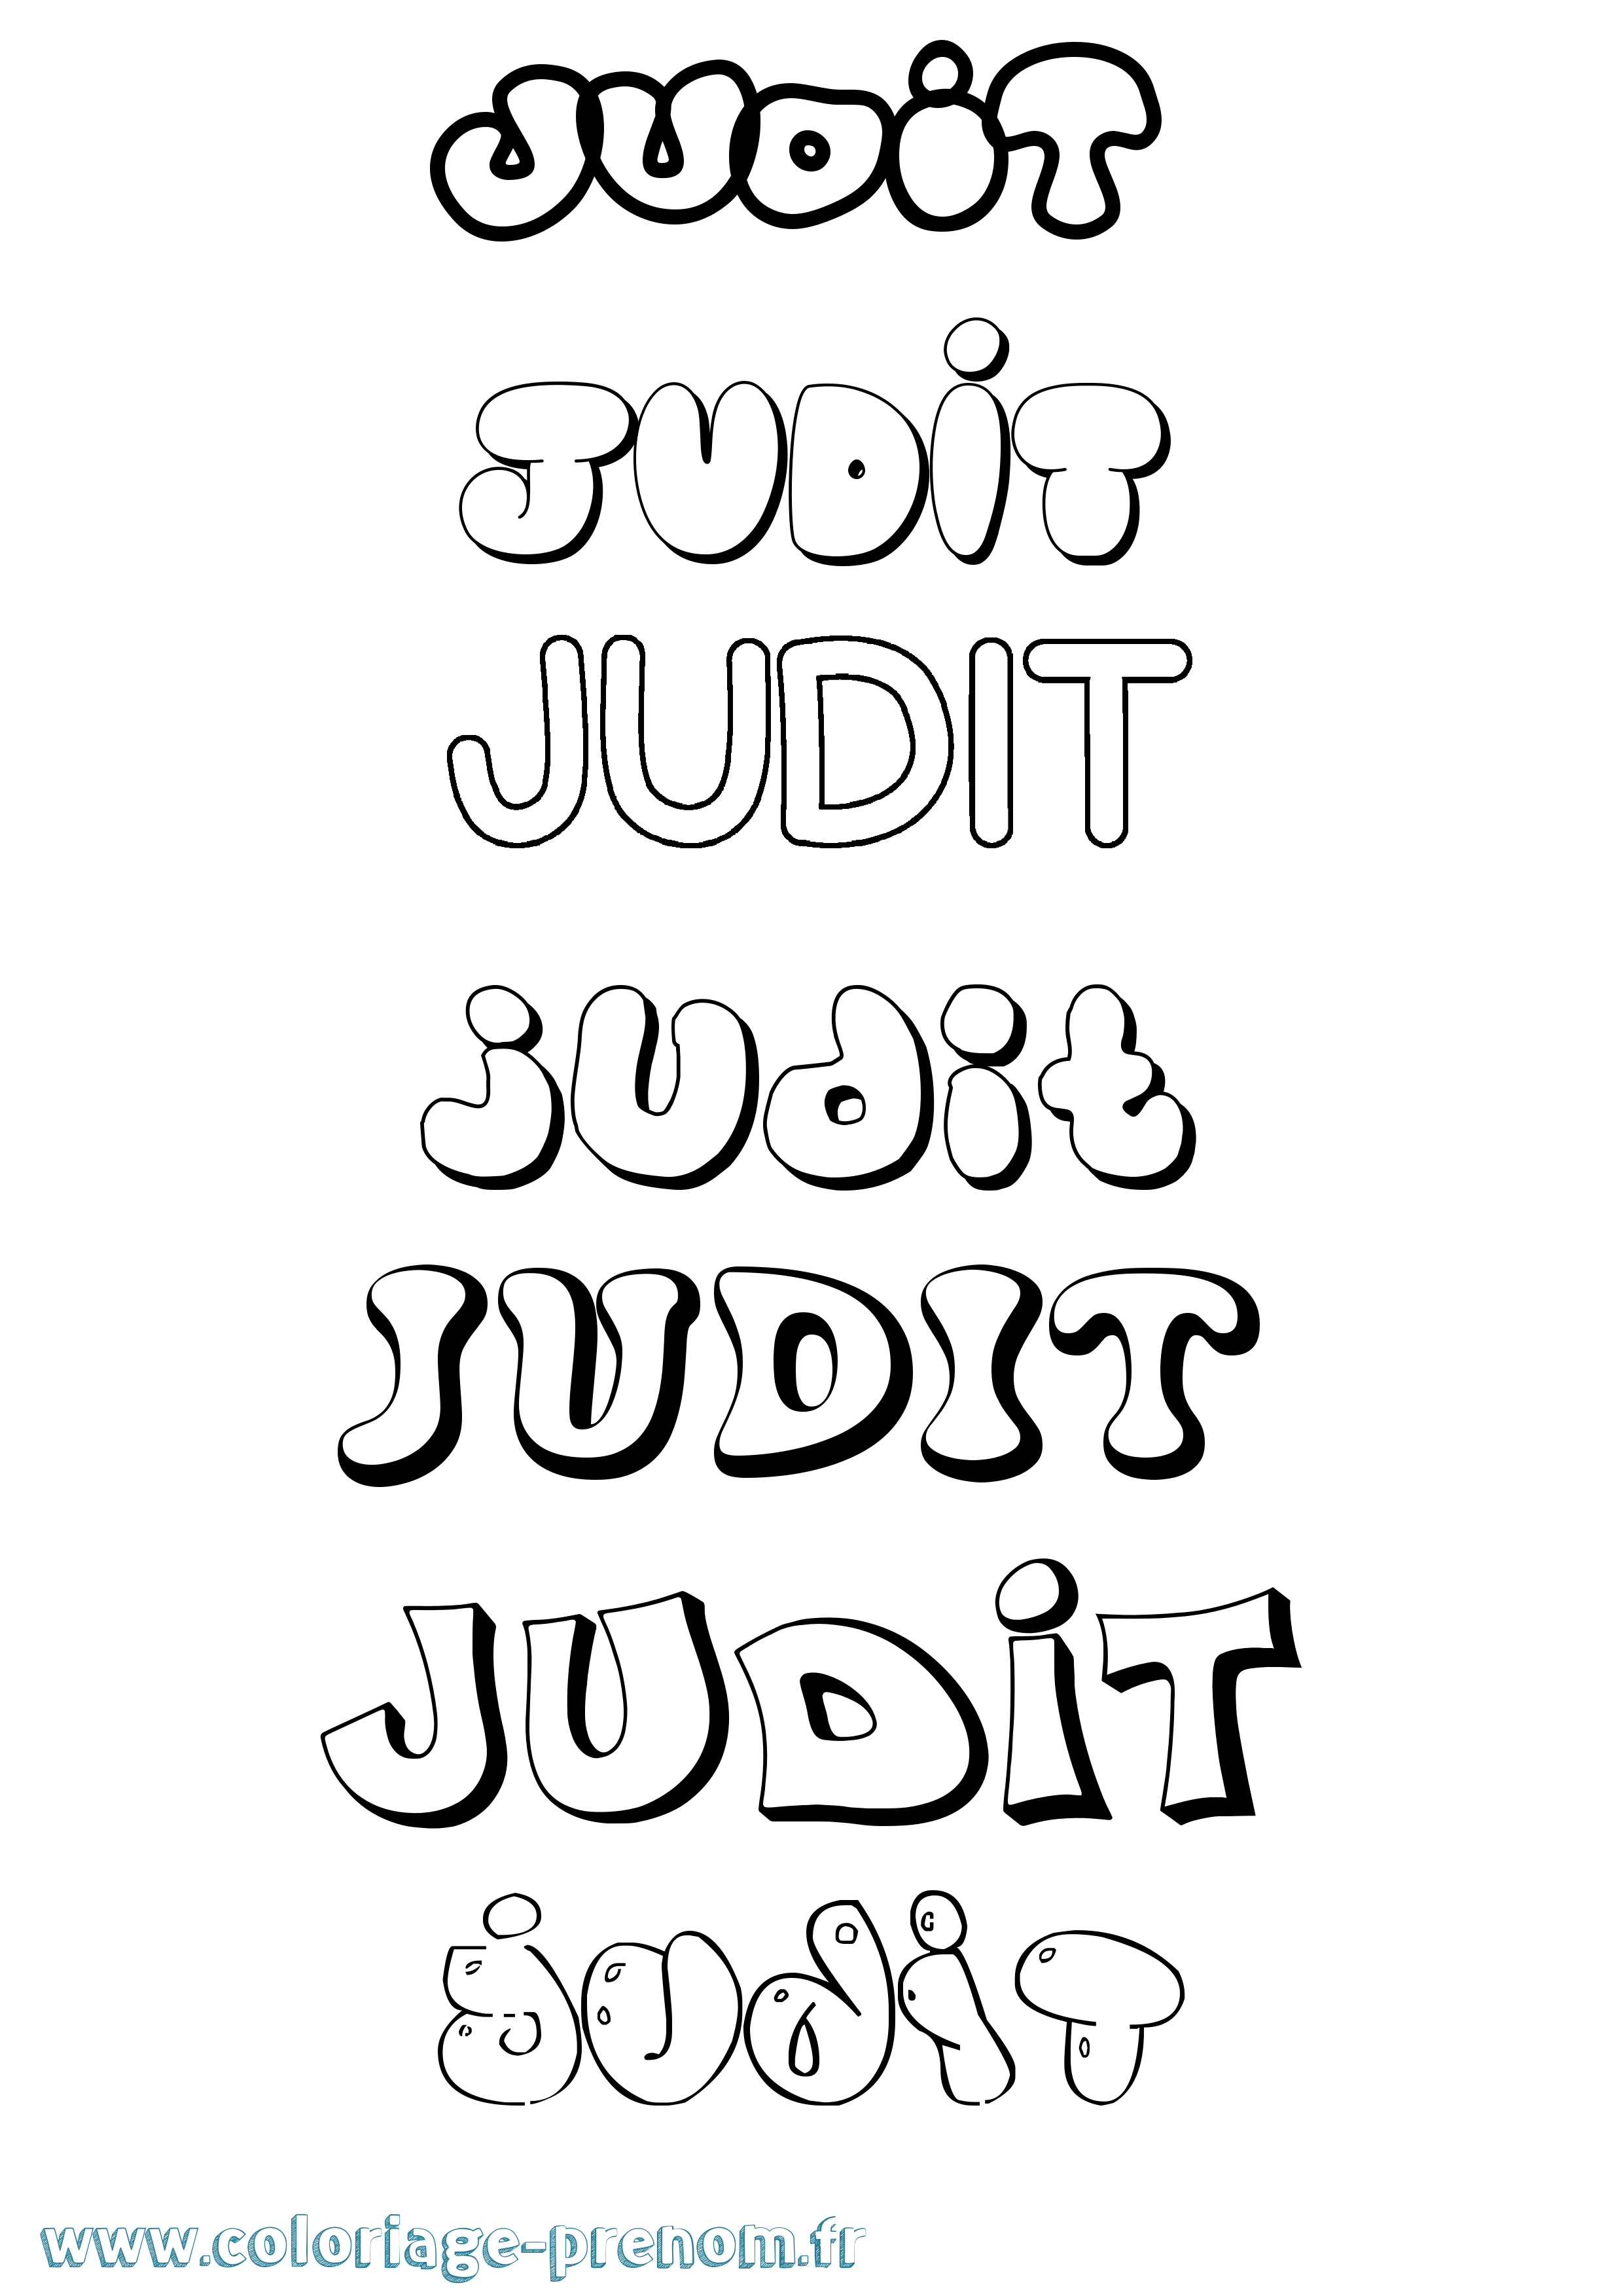 Coloriage prénom Judit Bubble